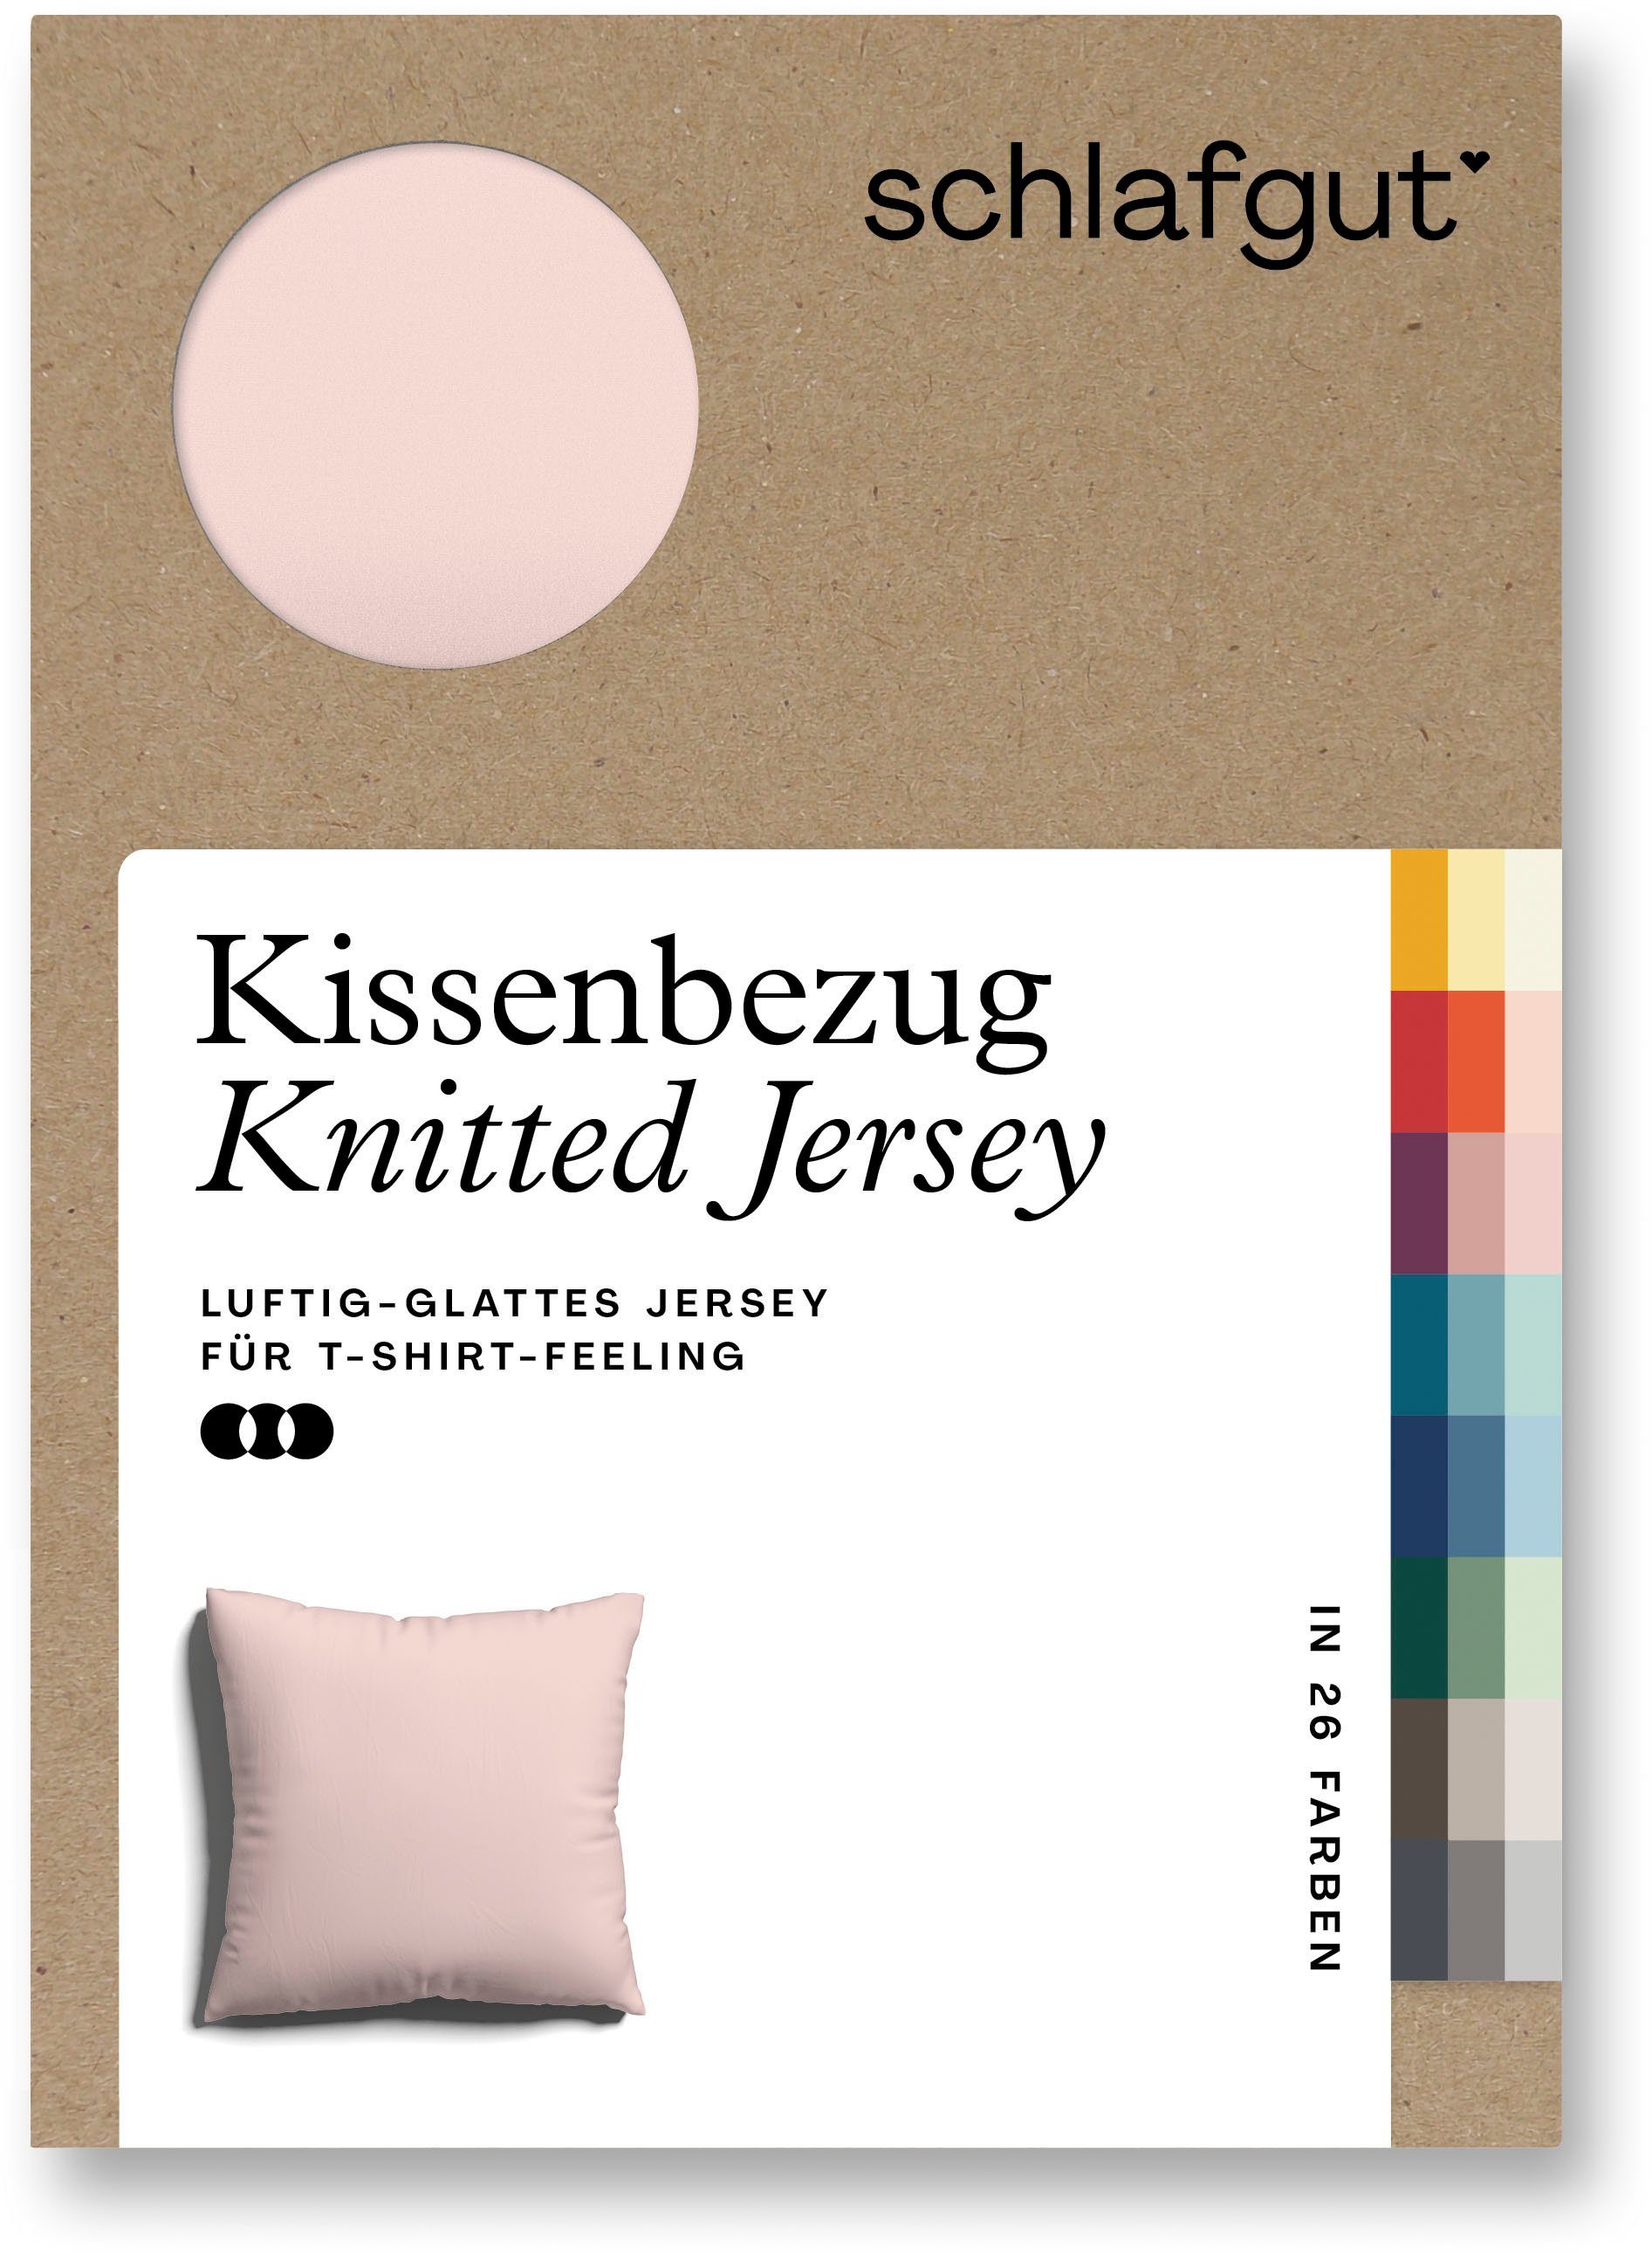 Kissenbezug Knitted Jersey aus Bio-Baumwolle mit Elasthan, bügelfrei, Schlafgut (1 Stück), besonders fein gestrickt, Kissenhülle mit farbigem Reißverschluss